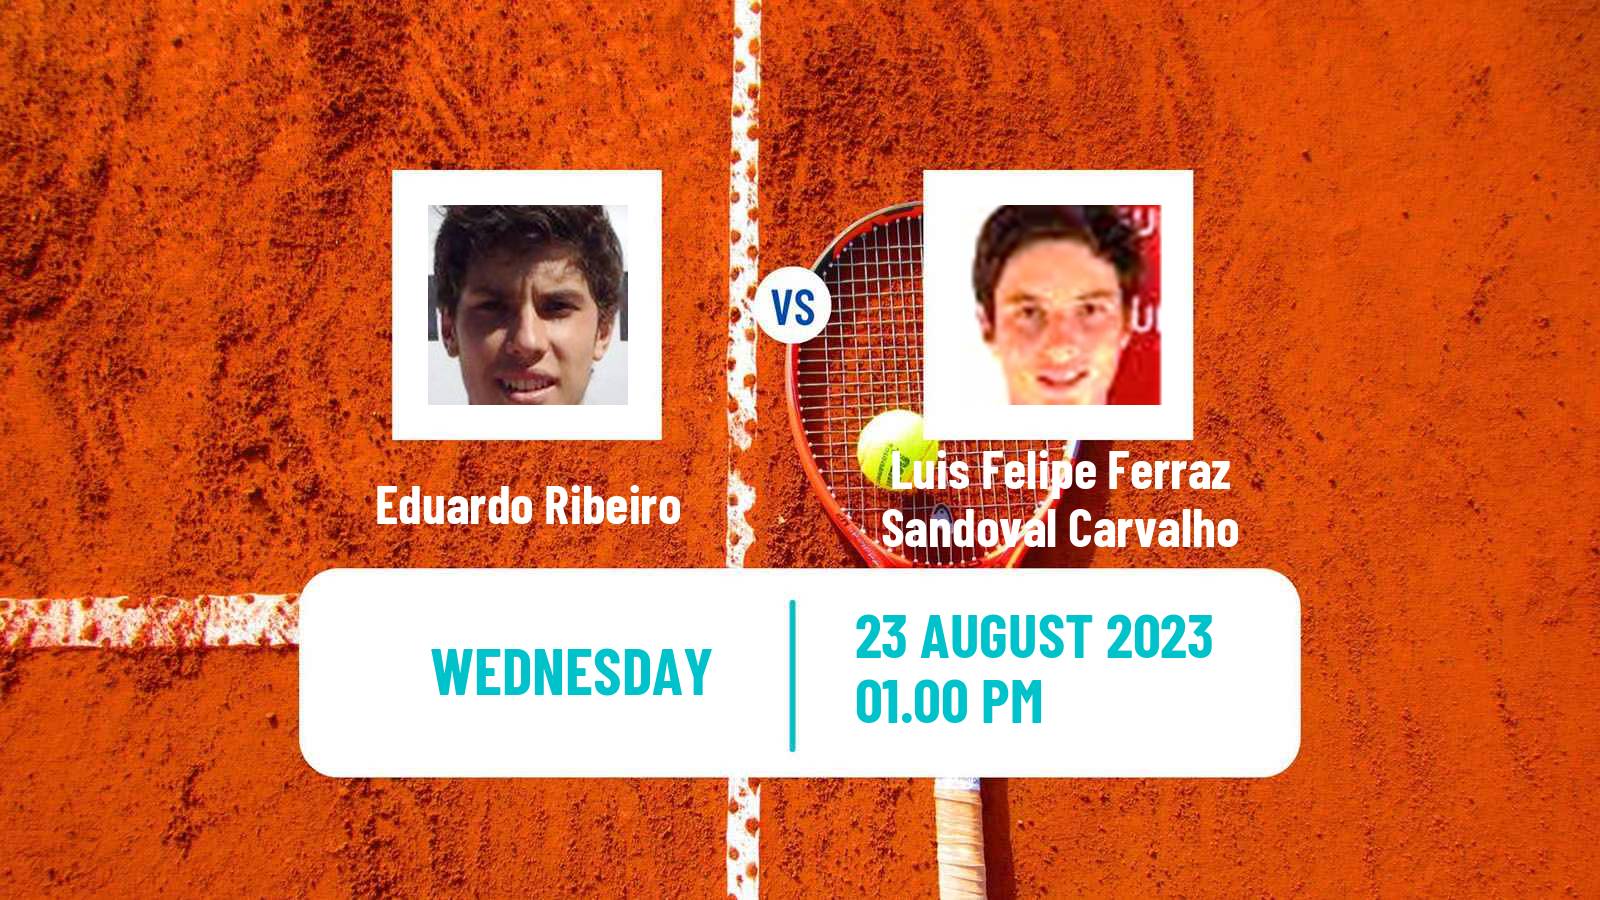 Tennis ITF M15 Sao Paulo Men Eduardo Ribeiro - Luis Felipe Ferraz Sandoval Carvalho